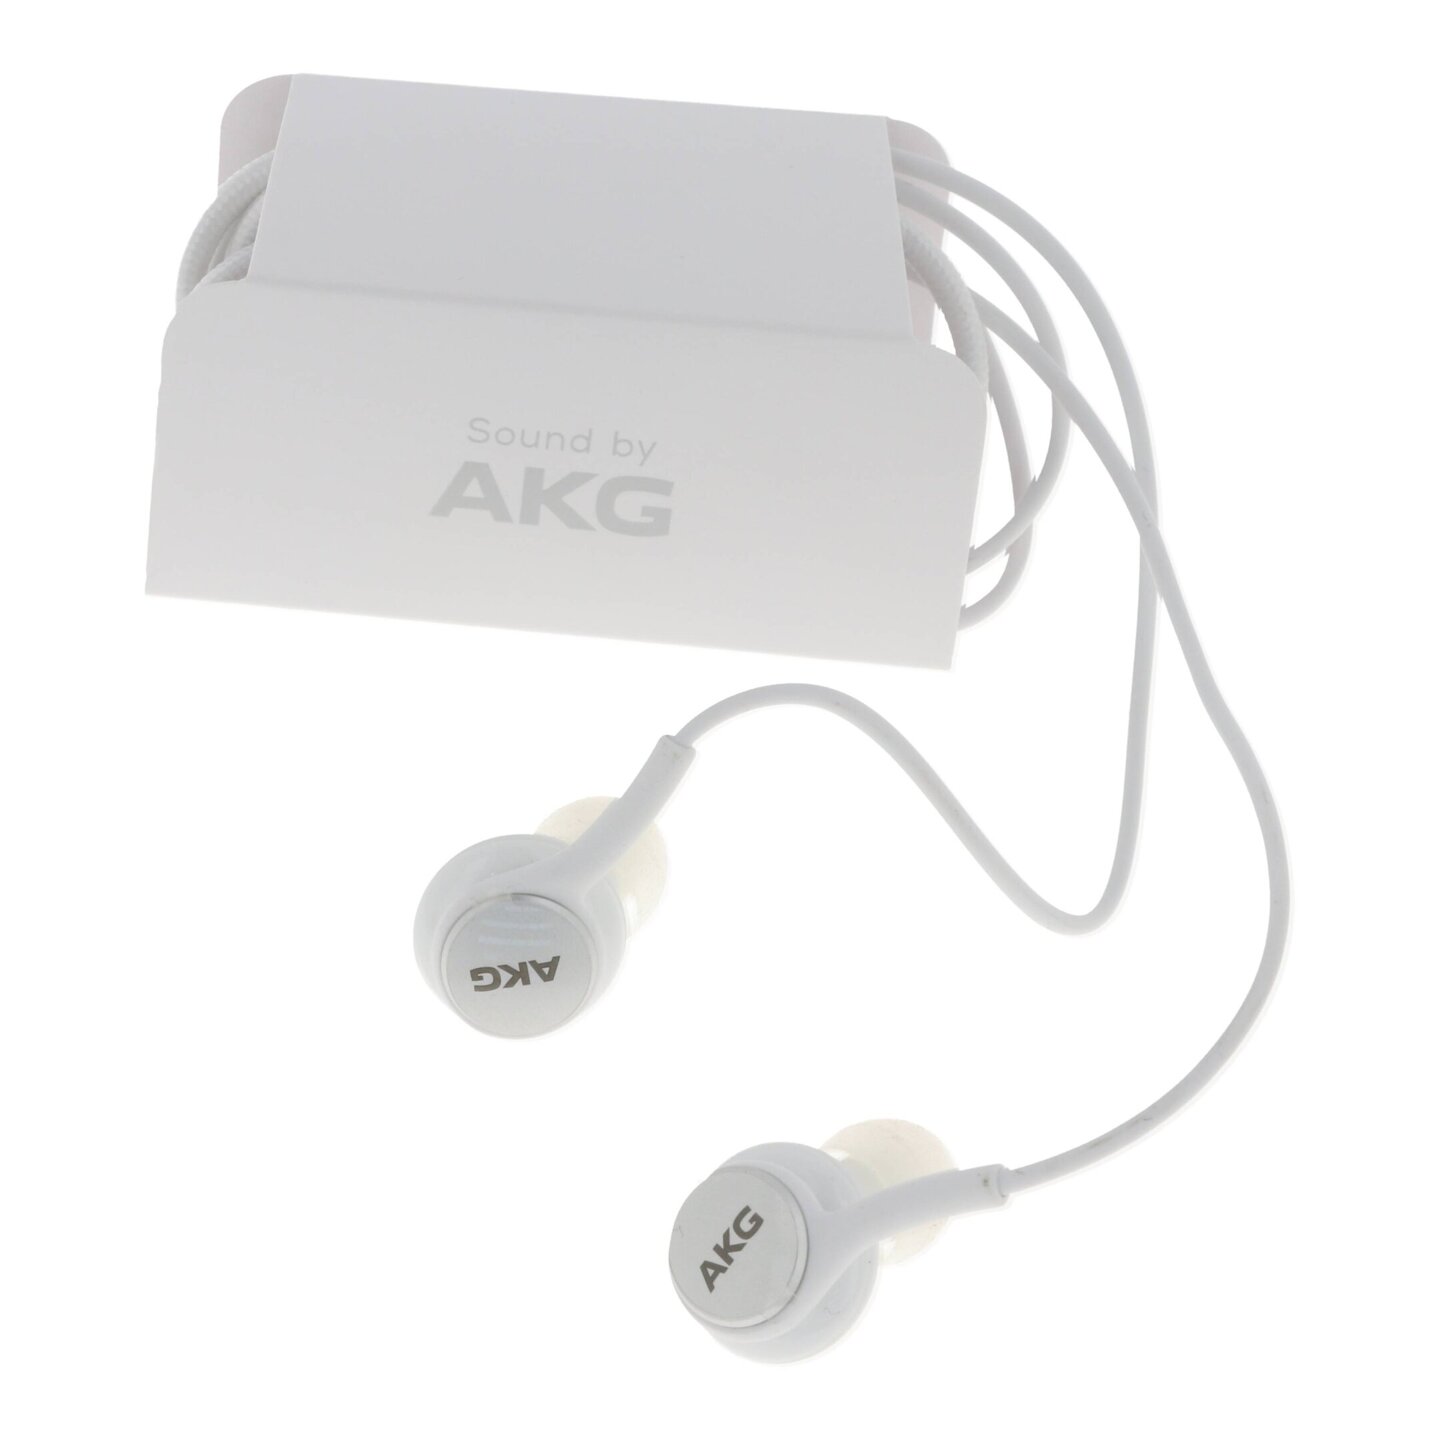 Zestaw słuchawkowy Samsung by AKG EO-IC100 